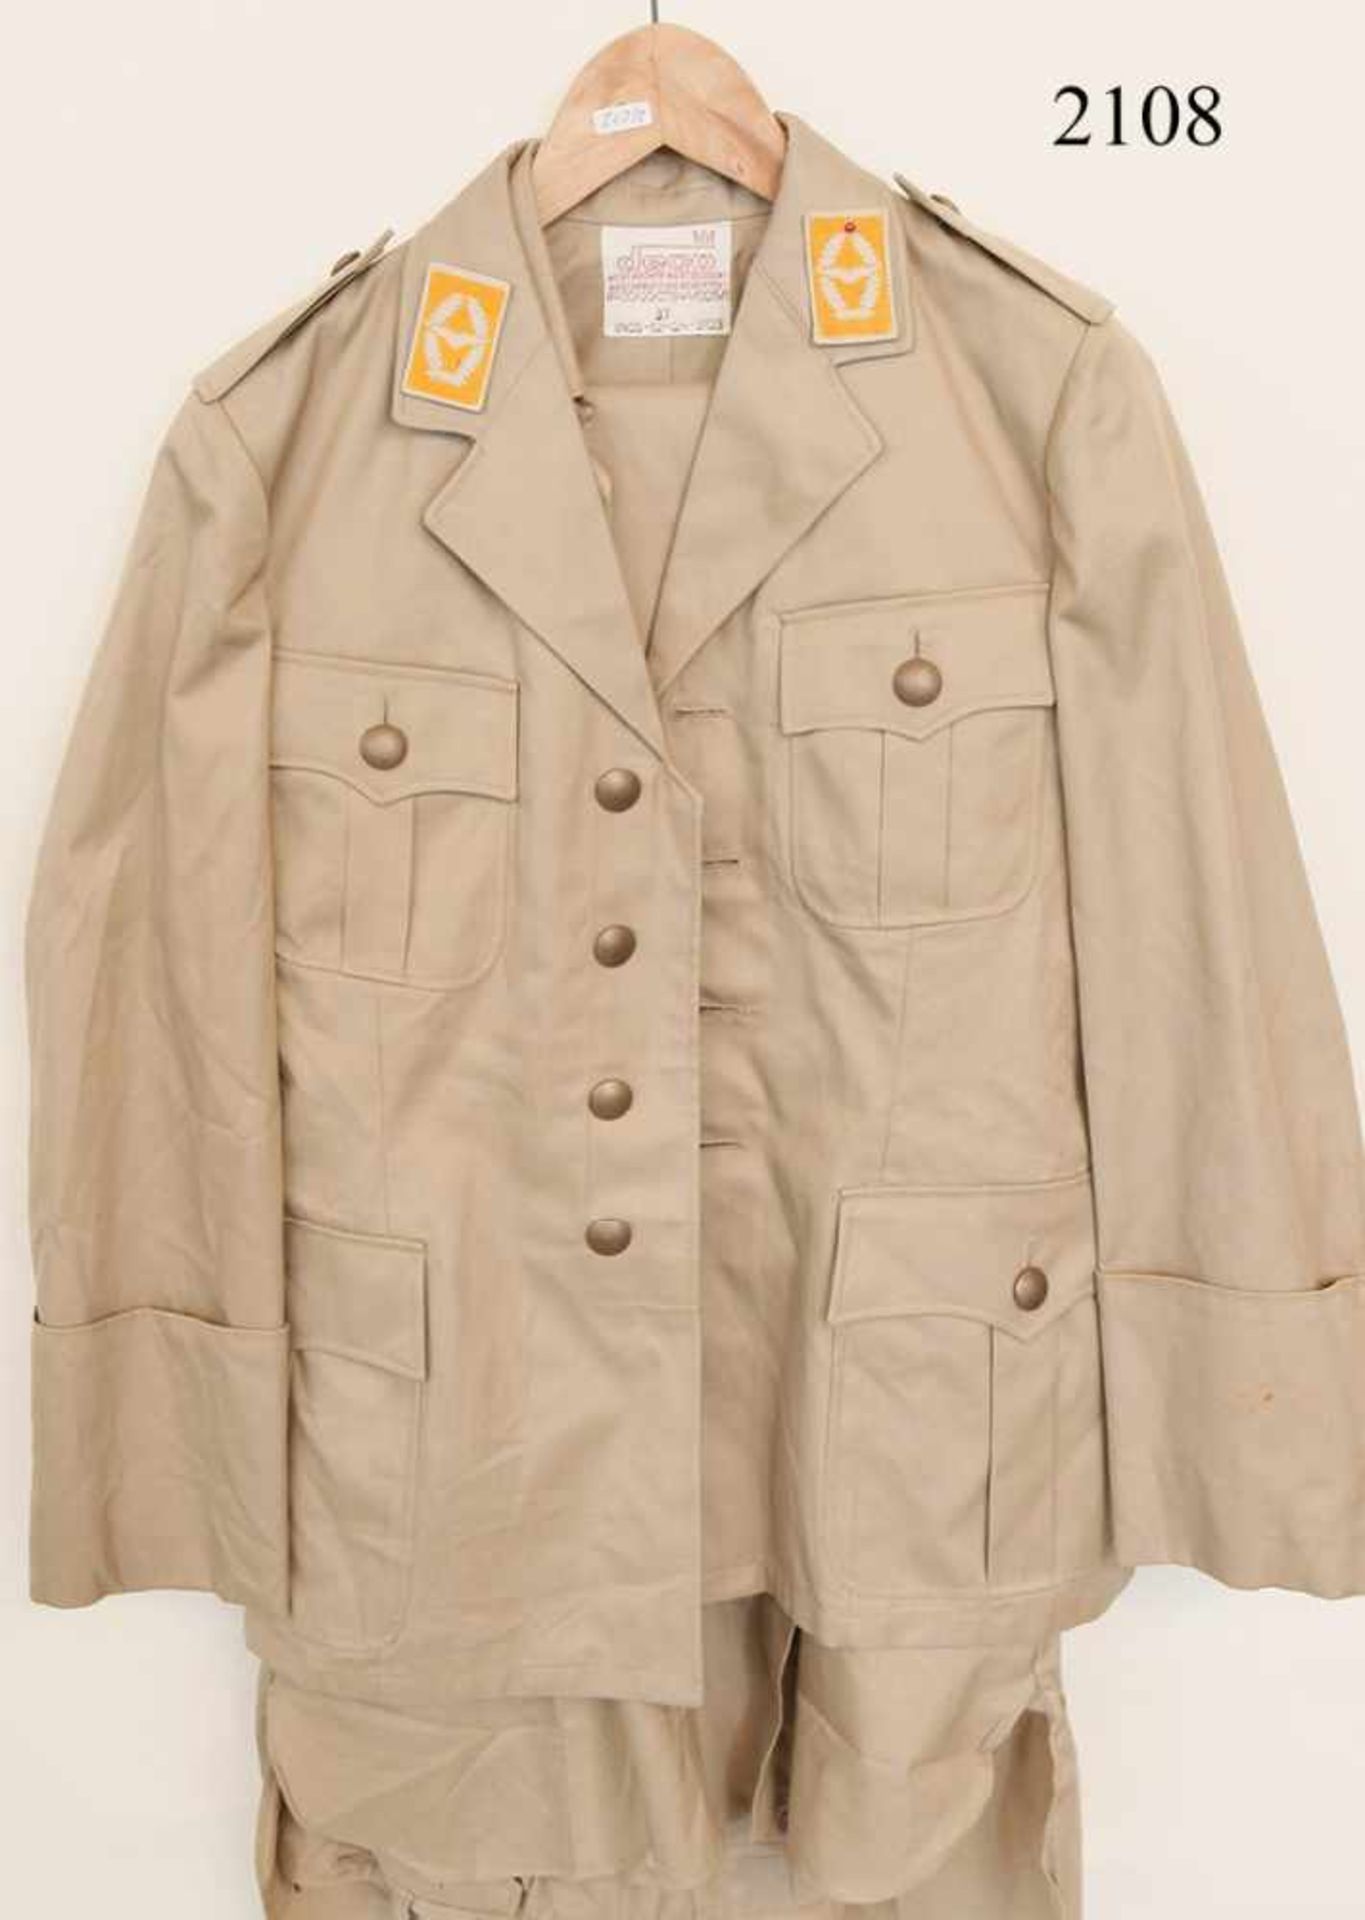 Bundesluftwaffe Tropenuniform1. Modell. Herstelleretikett von 1967. Jacke, Hemd und Hose. Zustand: